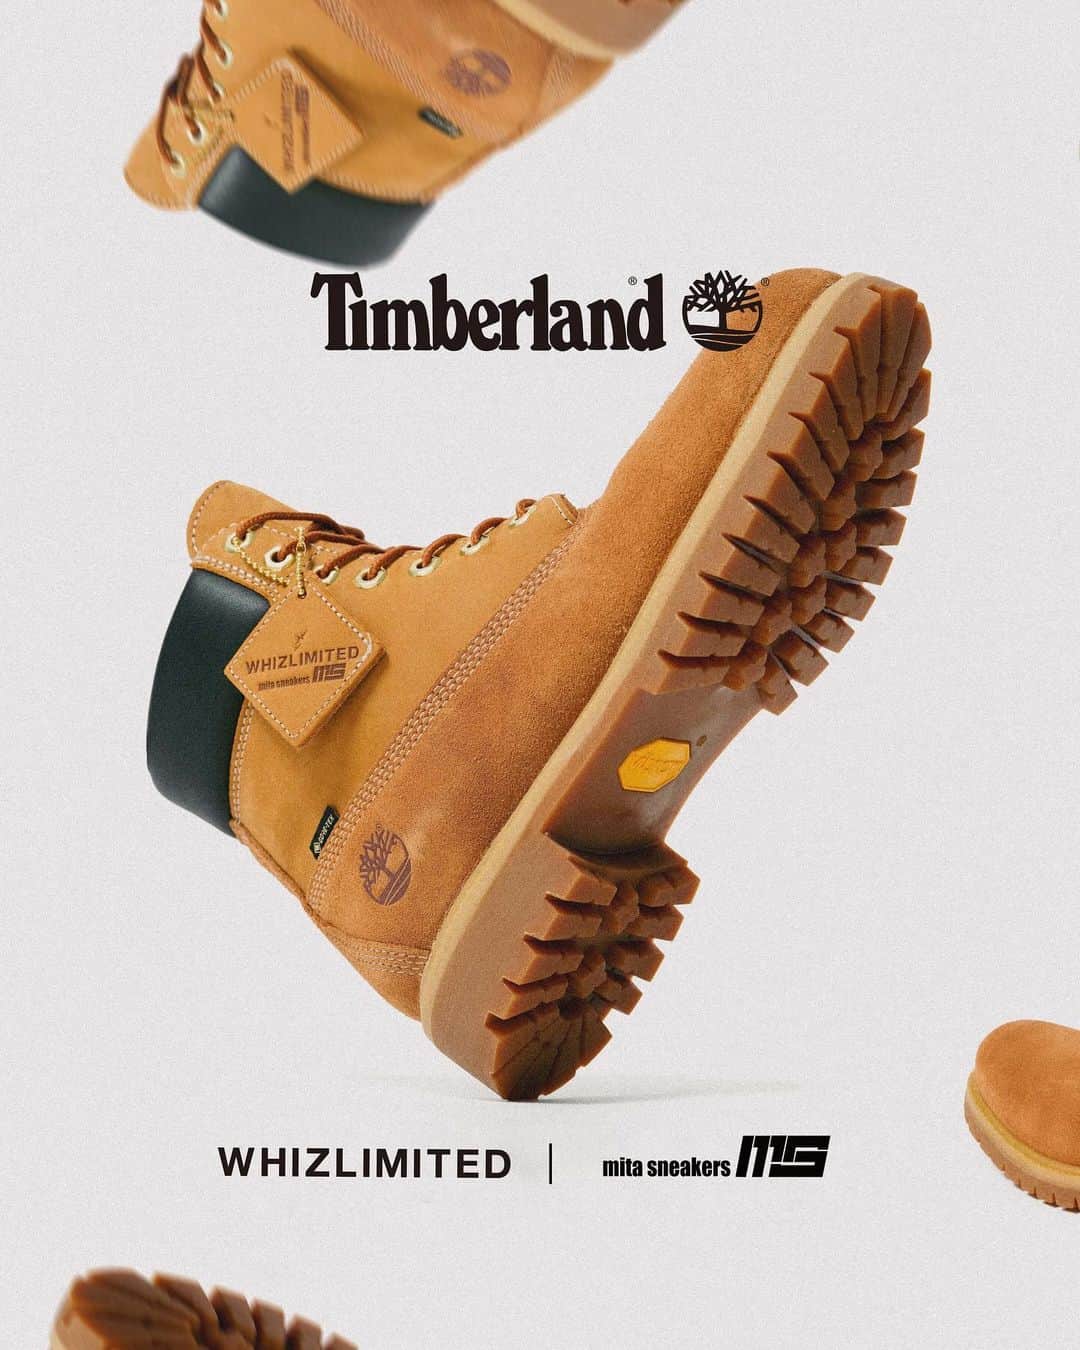 ミタスニーカーズのインスタグラム：「Timberland 6IN PREMIUM VIBRAM GTX “GORE-TEX” “WHIZLIMITED x mita sneakers”   エイジングを楽しむコラボブーツ  1973年に世界初の完全防水レザーブーツとして誕生し、通称“イエローブーツ”とも呼ばれている＜ティンバーランド＞の傑作6インチブーツ。クラシックなスタイルはそのままに、LWG（レザーワーキンググループ）認定を受けているタンナリーで生産された「BETTER LEATHER」を採用。内部には保温性の高い「PrimaLoft® Insulation」や疲れを軽減し衝撃を吸収する「ANIT-FATIGUE TECHNOLOGY™」のフットベッドの搭載など、良好な履き心地でタウンからアウトドアまで幅広く活用できる定番アイテム。本作は、＜WHIZLIMITED＞と『mita sneakers』がチームアップした三者によるコラボレーションモデル。上質なスウェードとヌバックのコンビアッパーに足元をドライで快適に保つ防水透湿素材「GORE-TEX®」、グリップ力と耐久性に優れる「Vibram®」のラバーラグアウトソールを搭載して機能面をアップグレード。エンジニアブーツのように履き込むほどに魅力的なエイジングが楽しめるようにデザインされており、両者によるこだわりのアプローチによって再構築したスペシャルな1足。  Photo - @yutto0129」